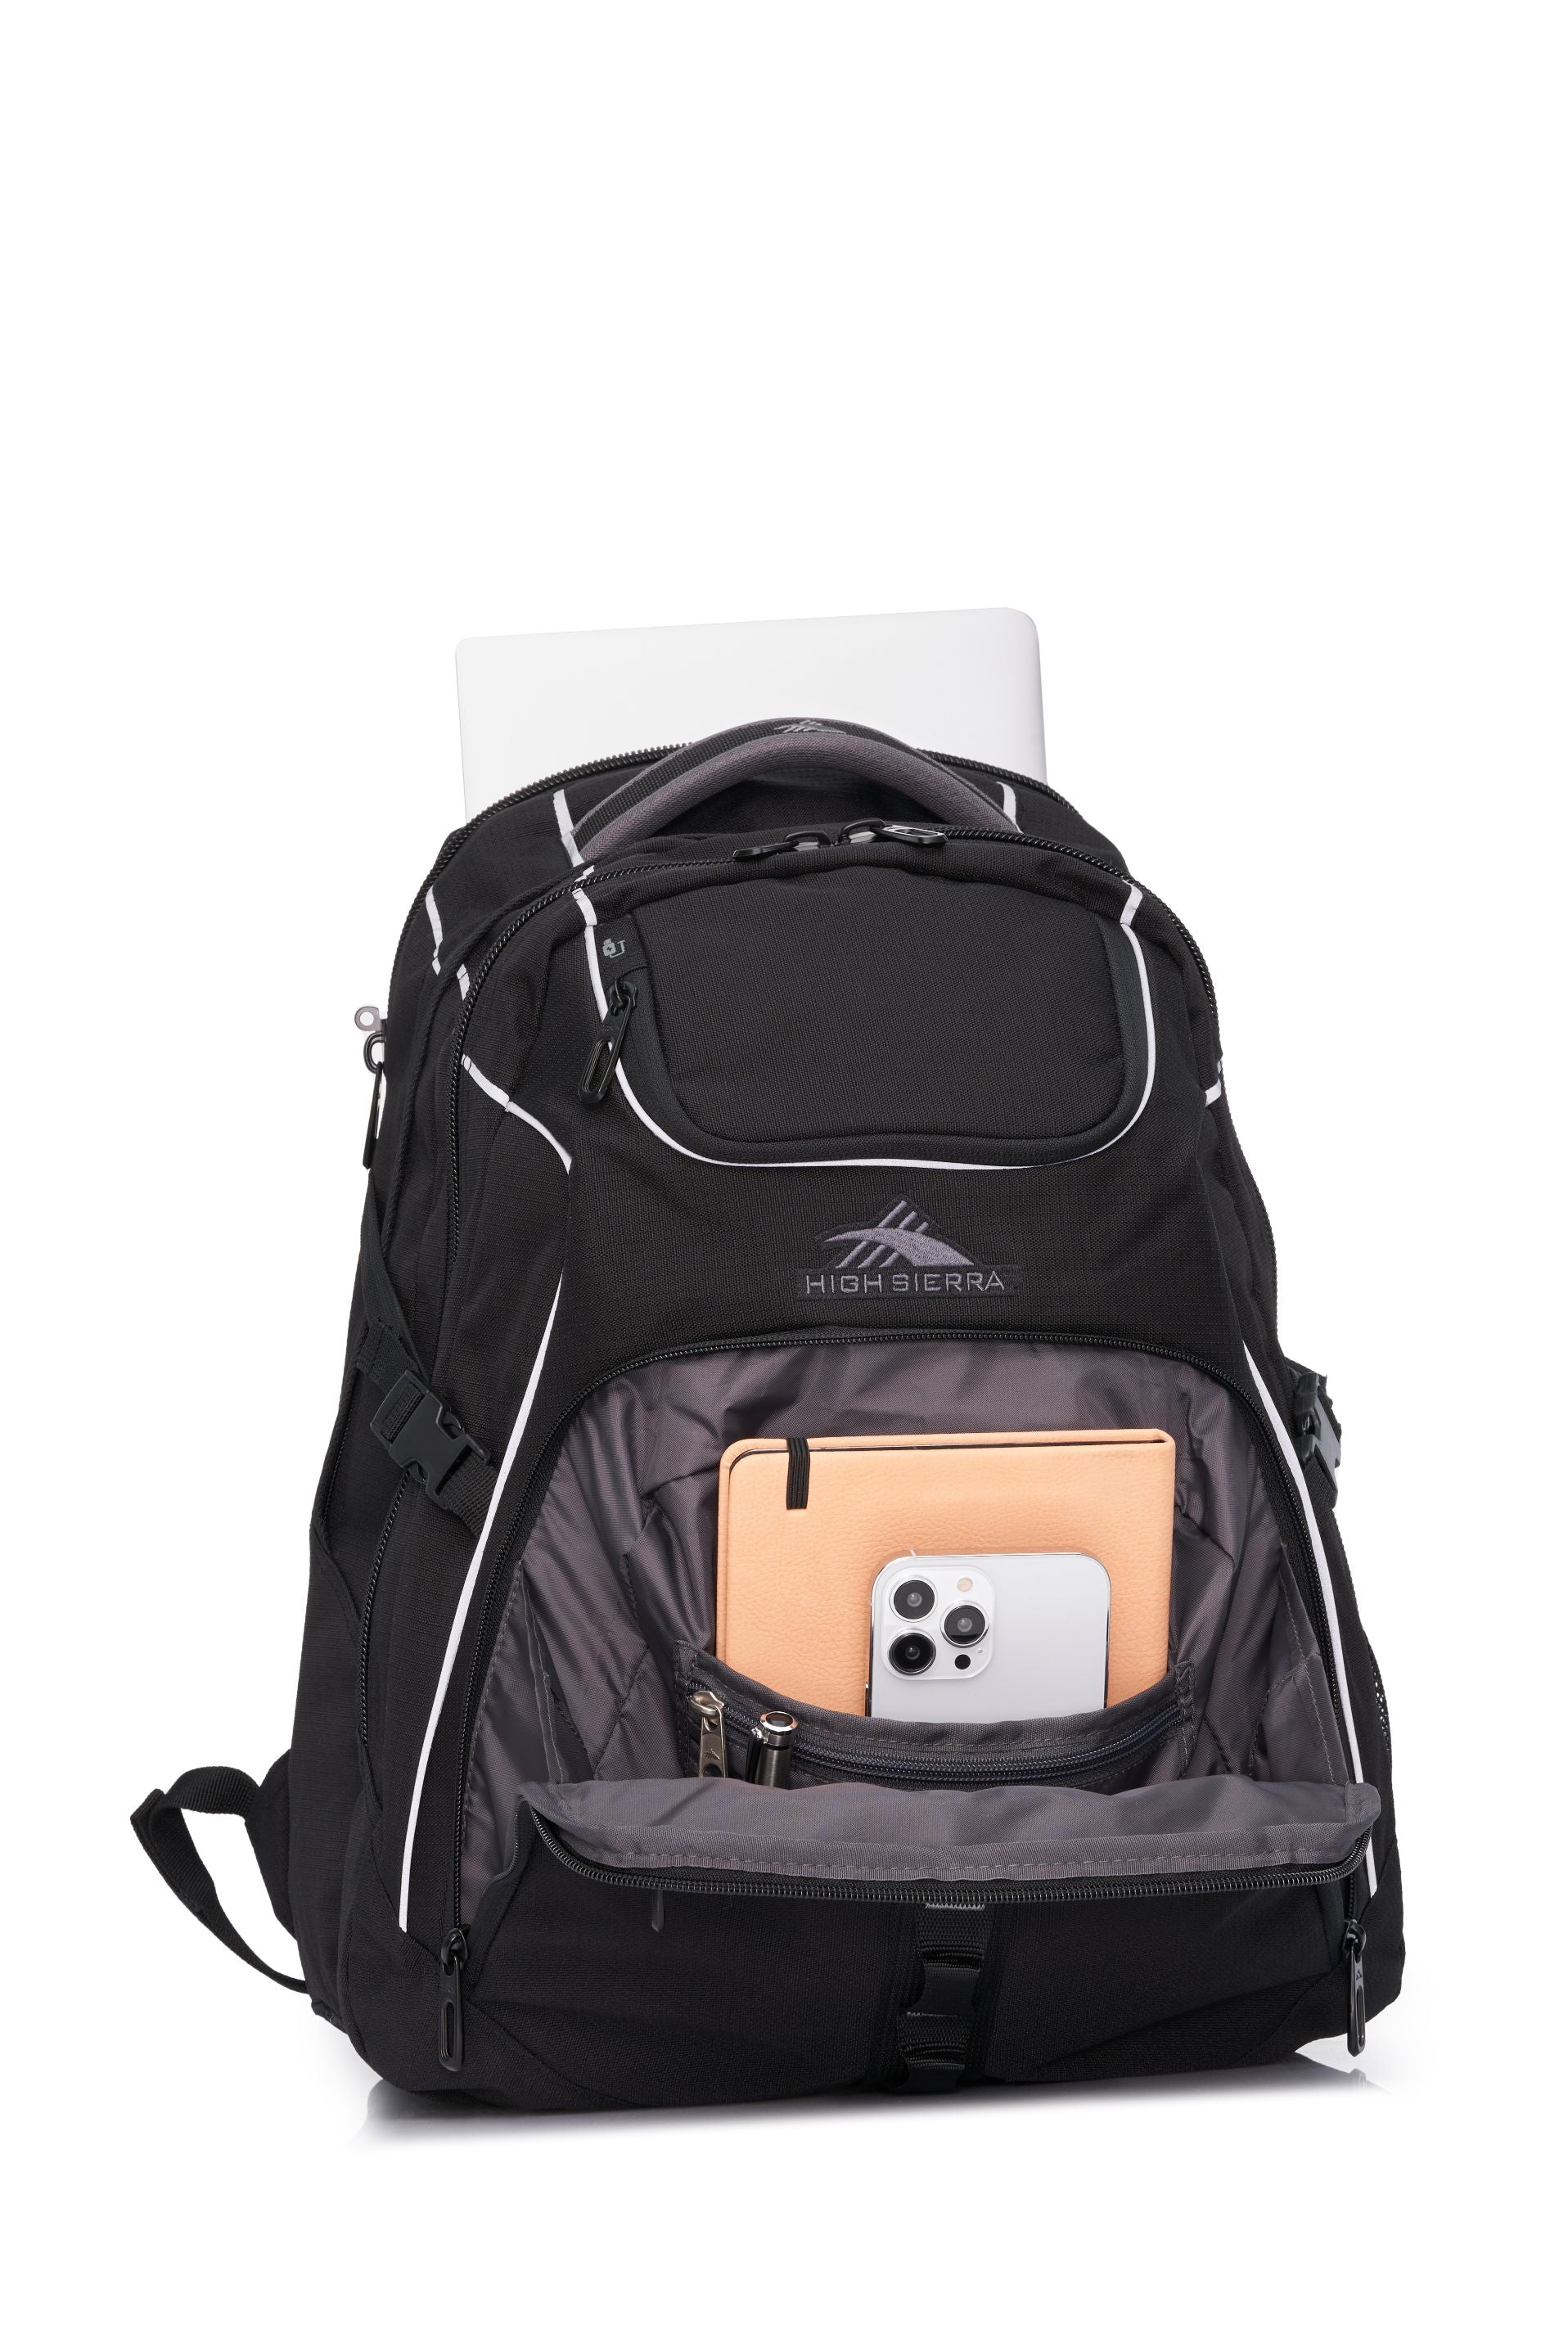 High Sierra - Access 3.0 Eco Backpack - Black-6